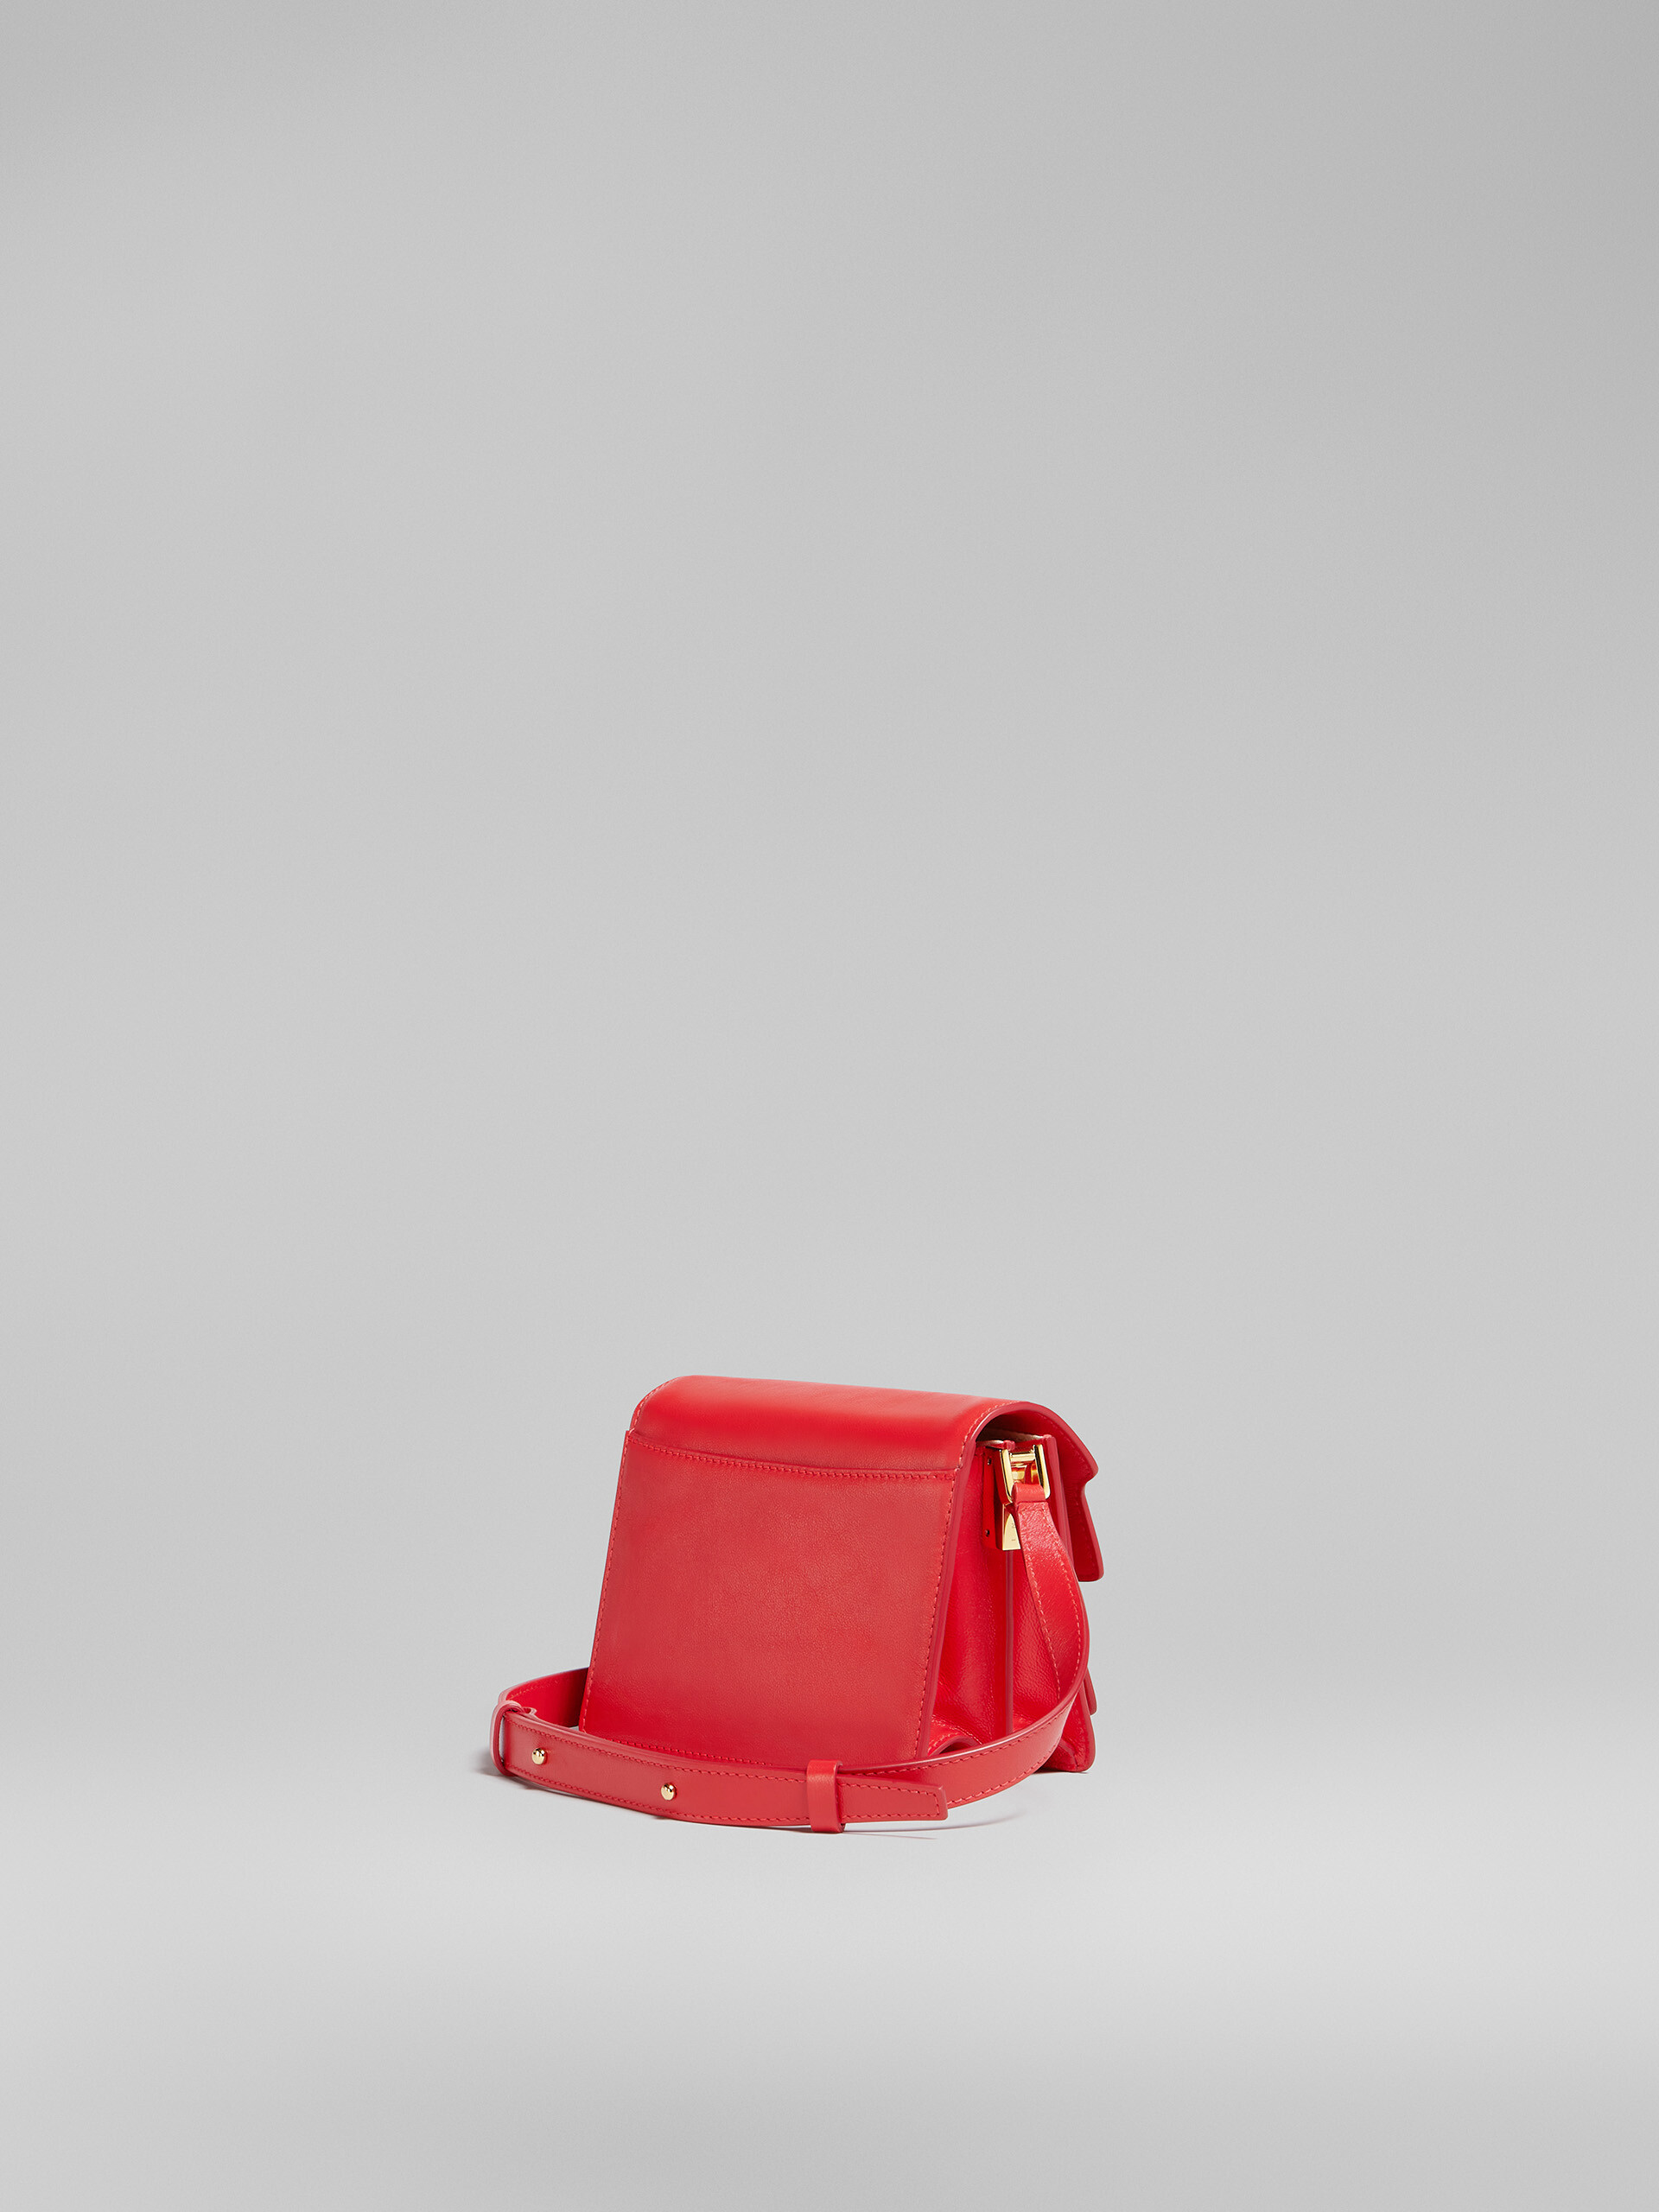 TRUNK SOFT bag mini in pelle rossa - Borse a spalla - Image 3